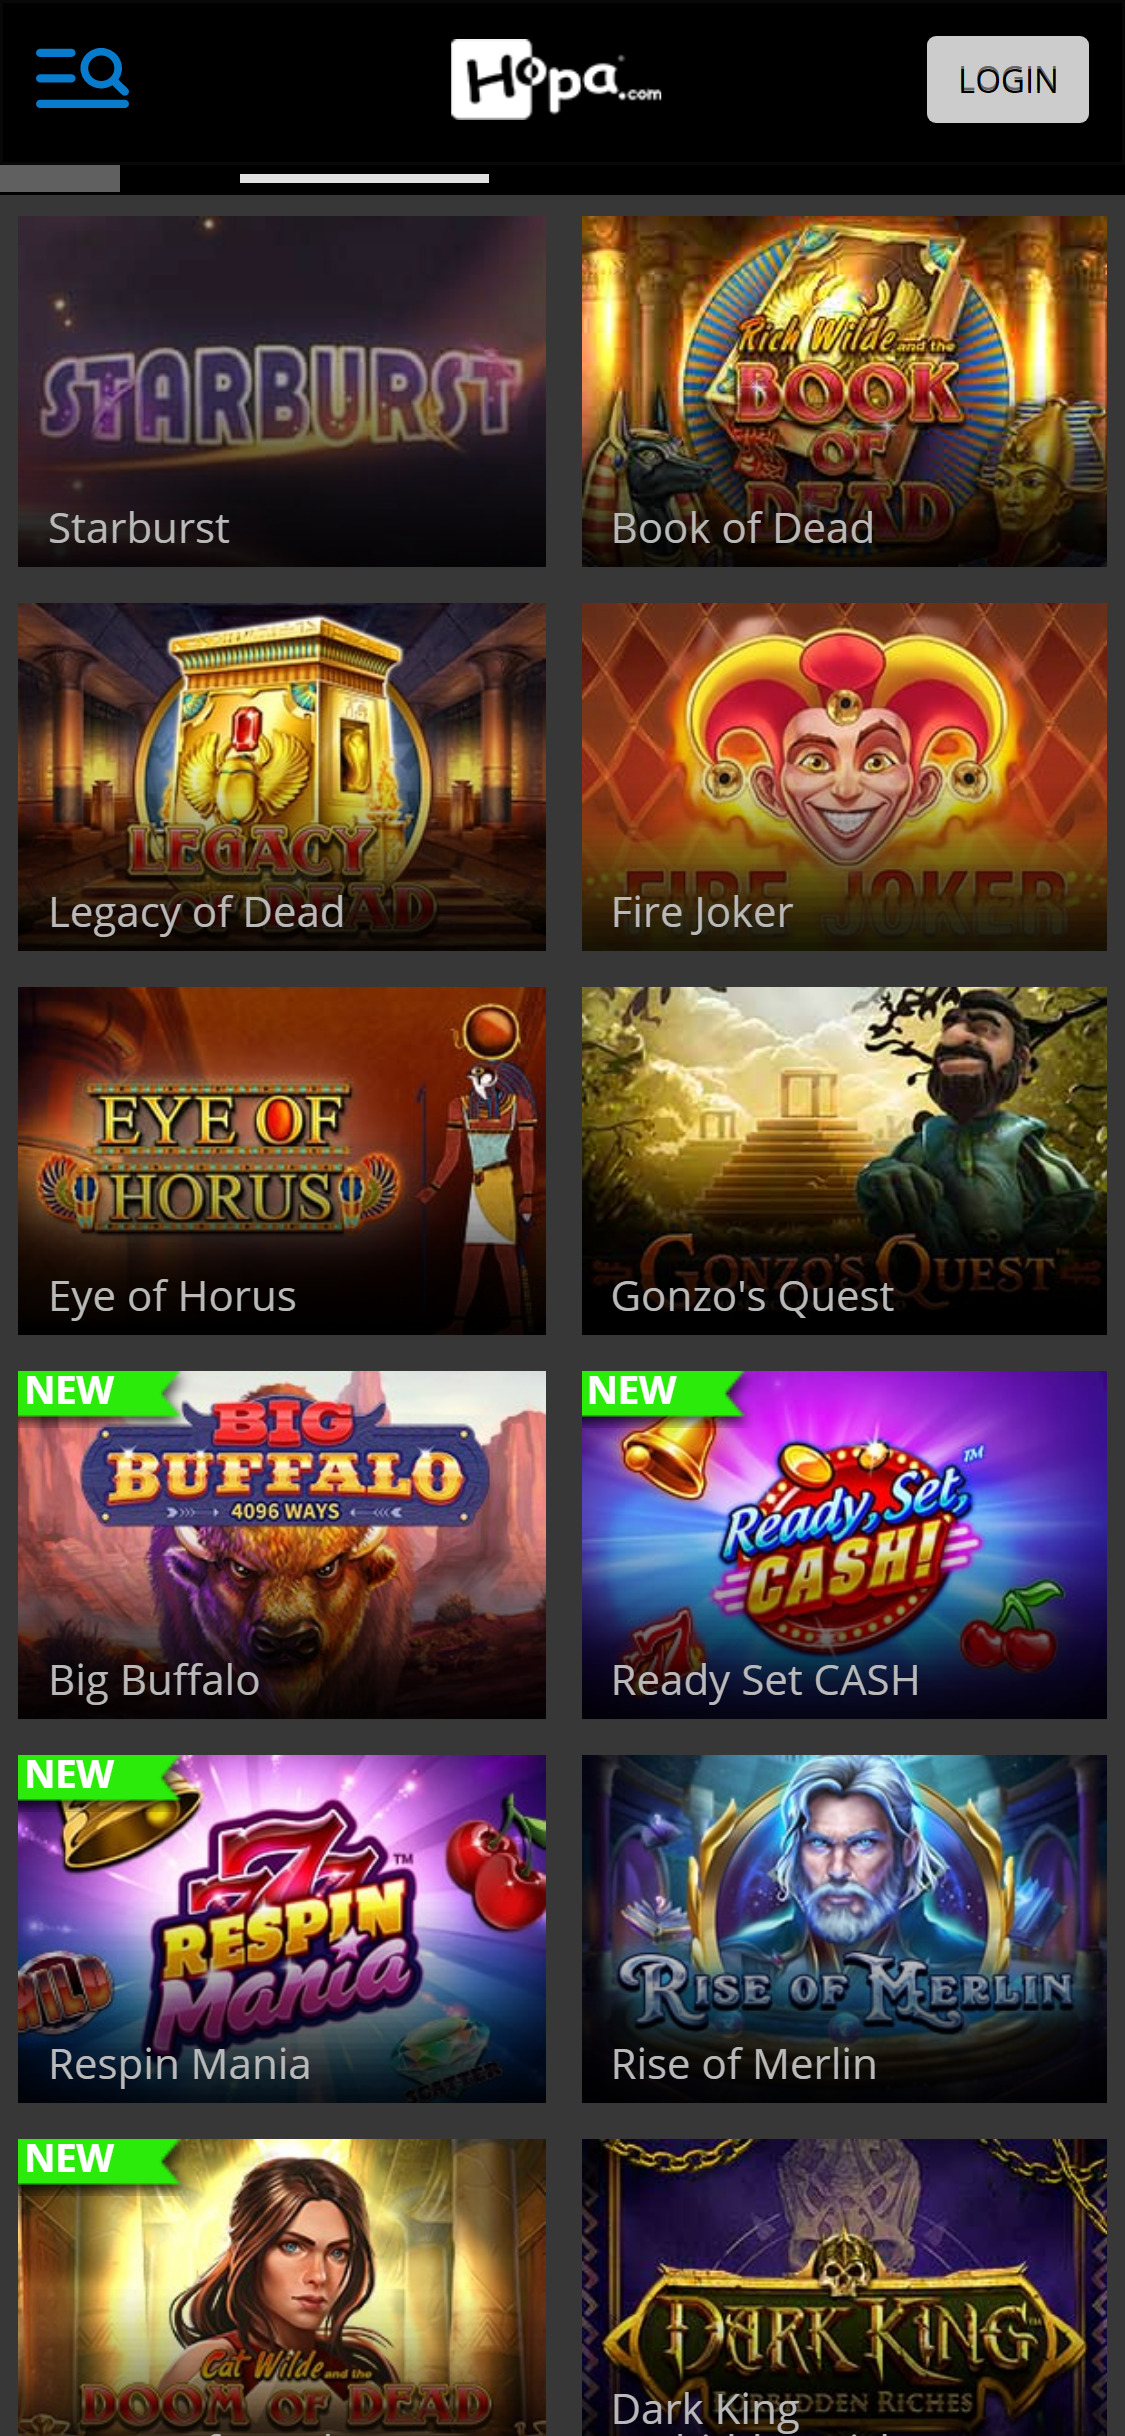 Hopa Casino Mobile Games Review